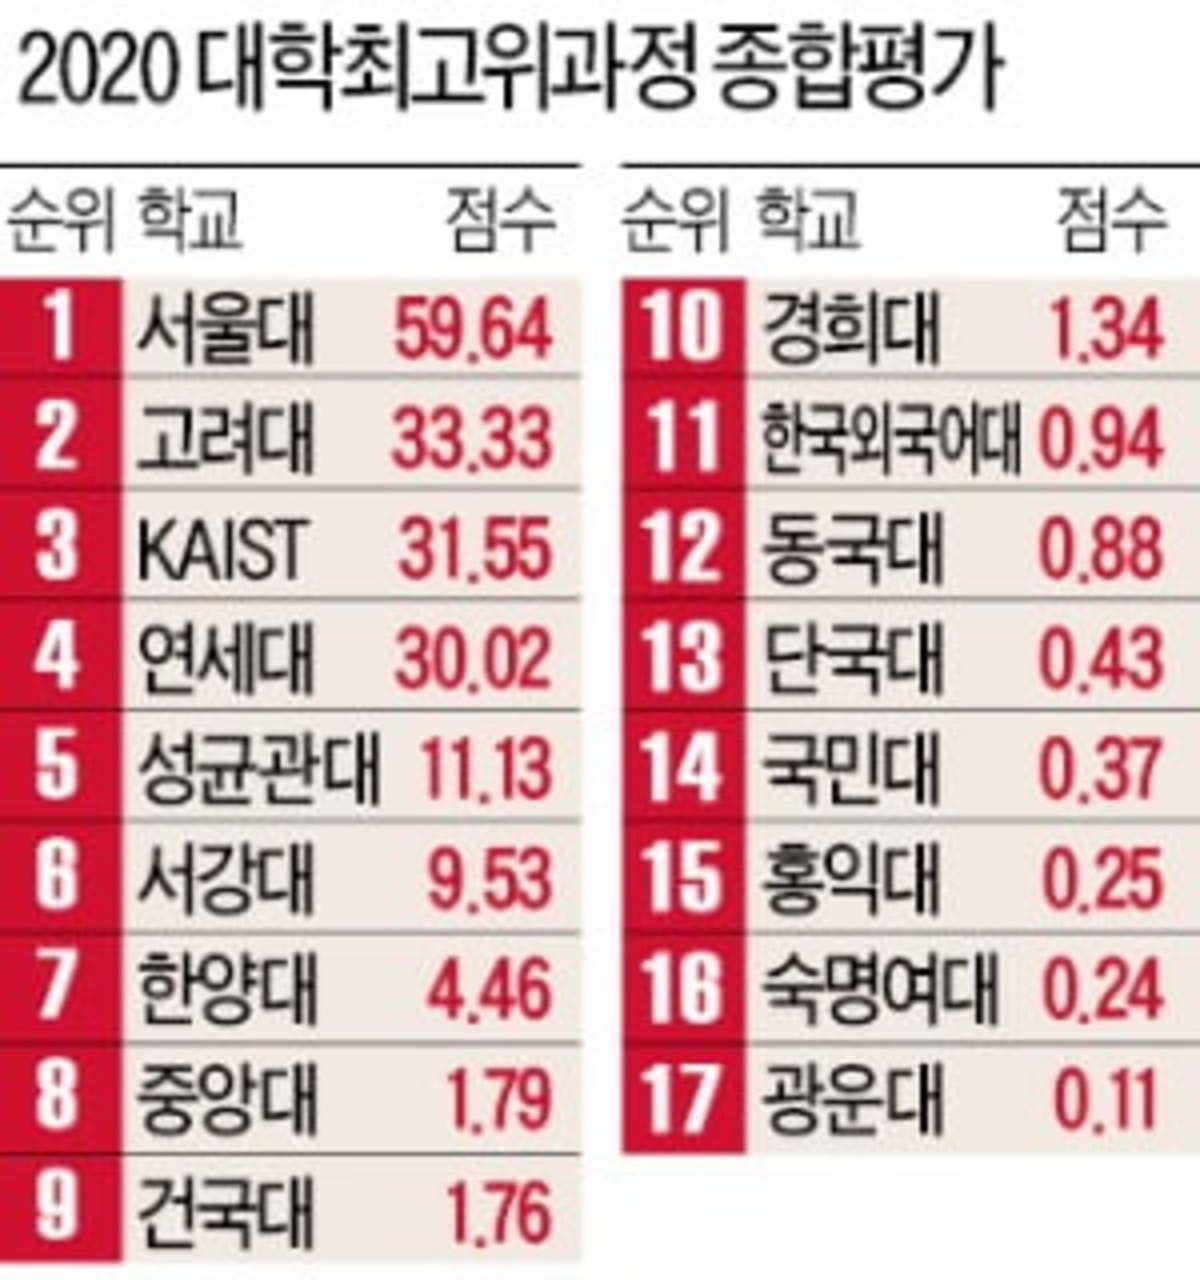 단국대 3계단 올라 톱10 눈앞…미래 평판은 Kaist·성균관대 順 | 한국경제